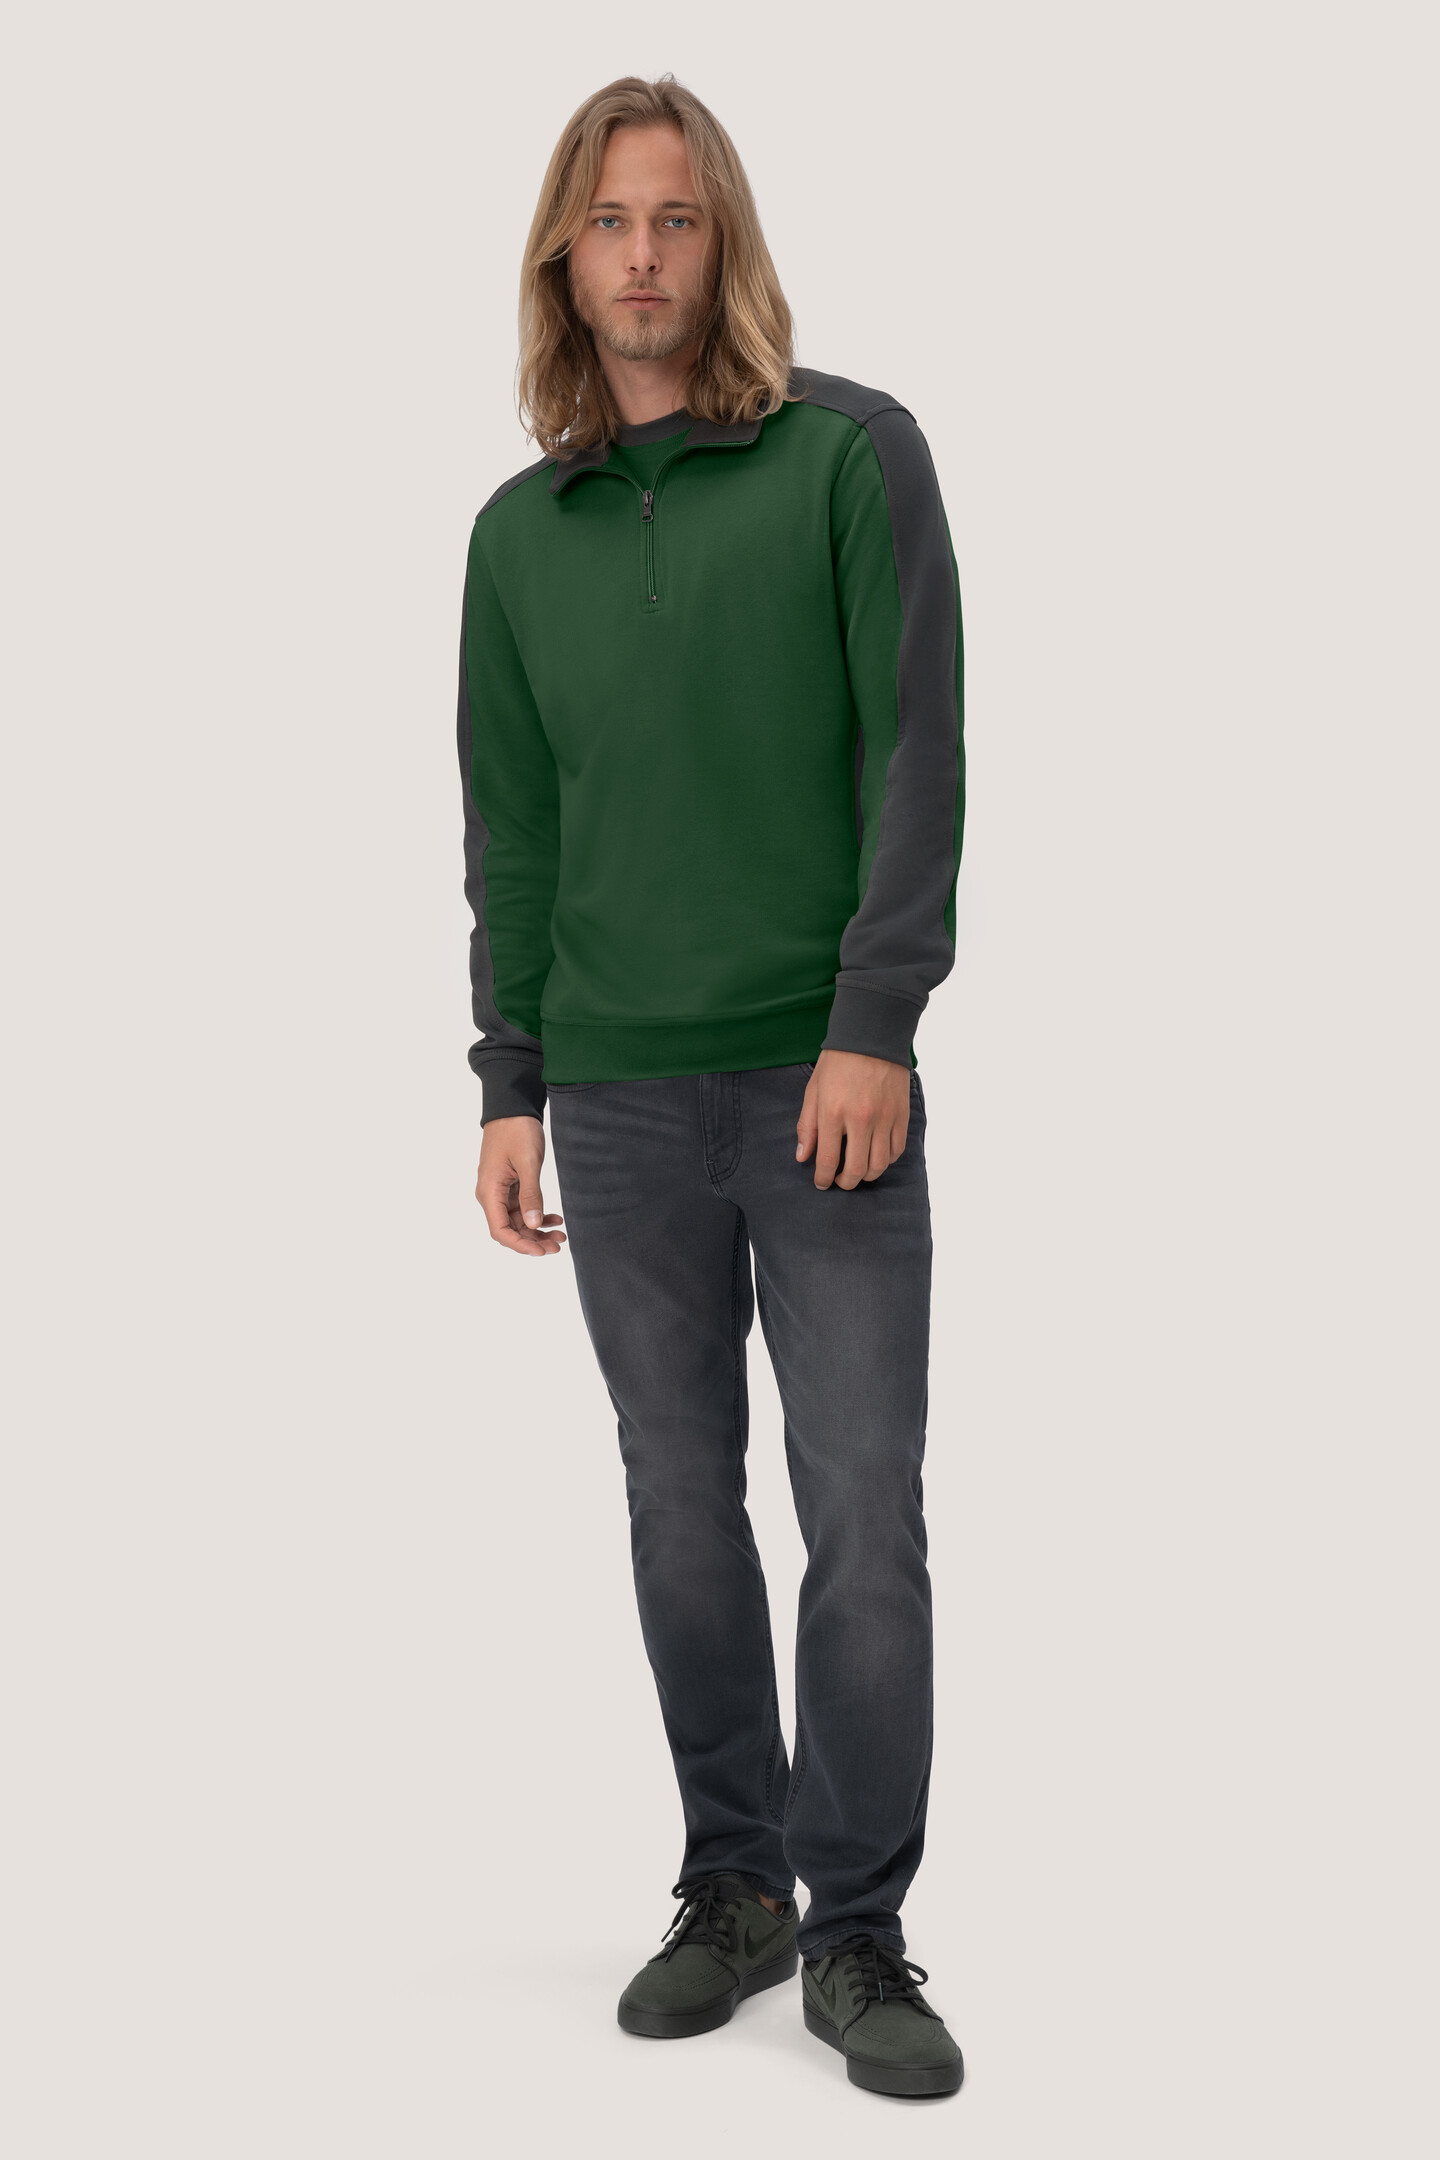 HAKRO Zip-Sweatshirt 476 Contrast Mikralinar®